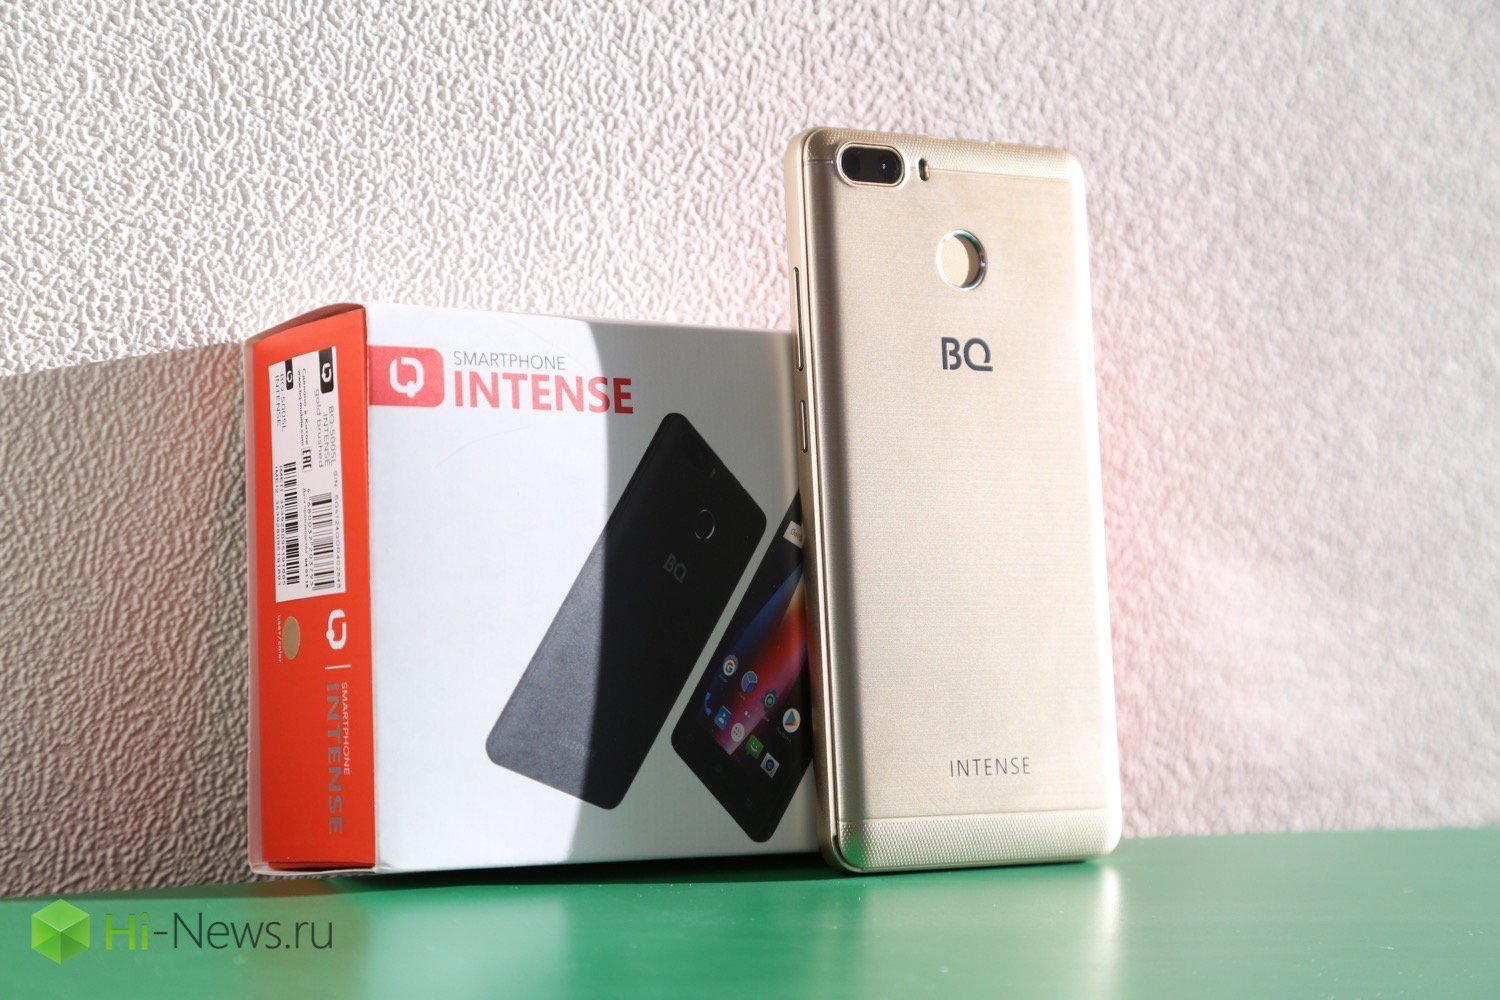 BQ Intense — langspiel-Smartphone aus Russland